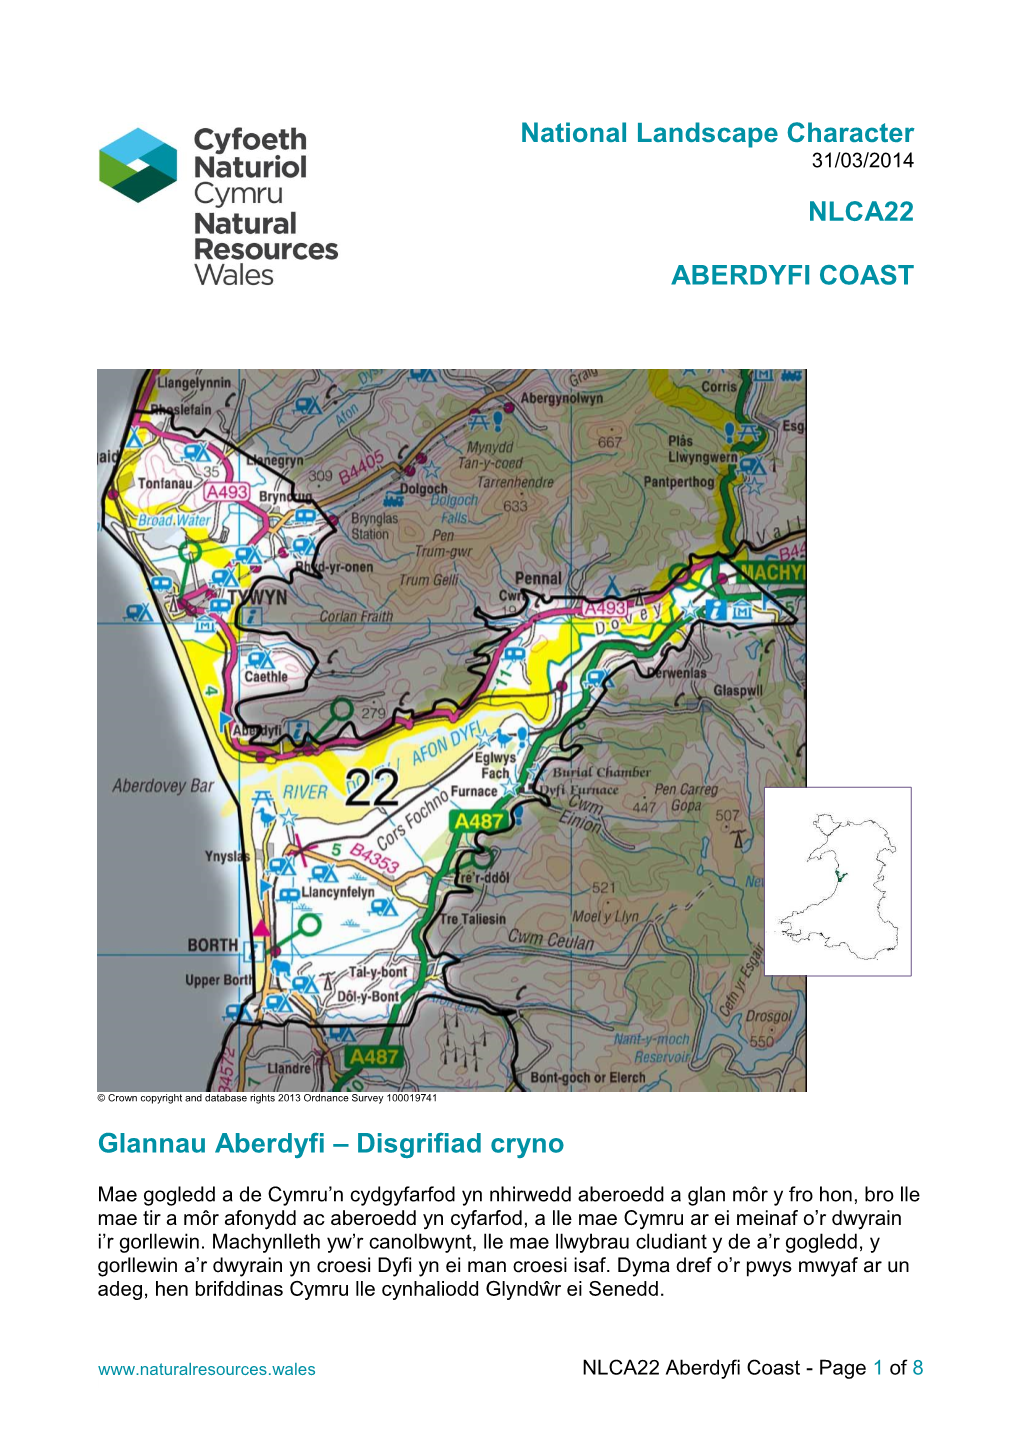 National Landscape Character NLCA22 ABERDYFI COAST Glannau Aberdyfi – Disgrifiad Cryno